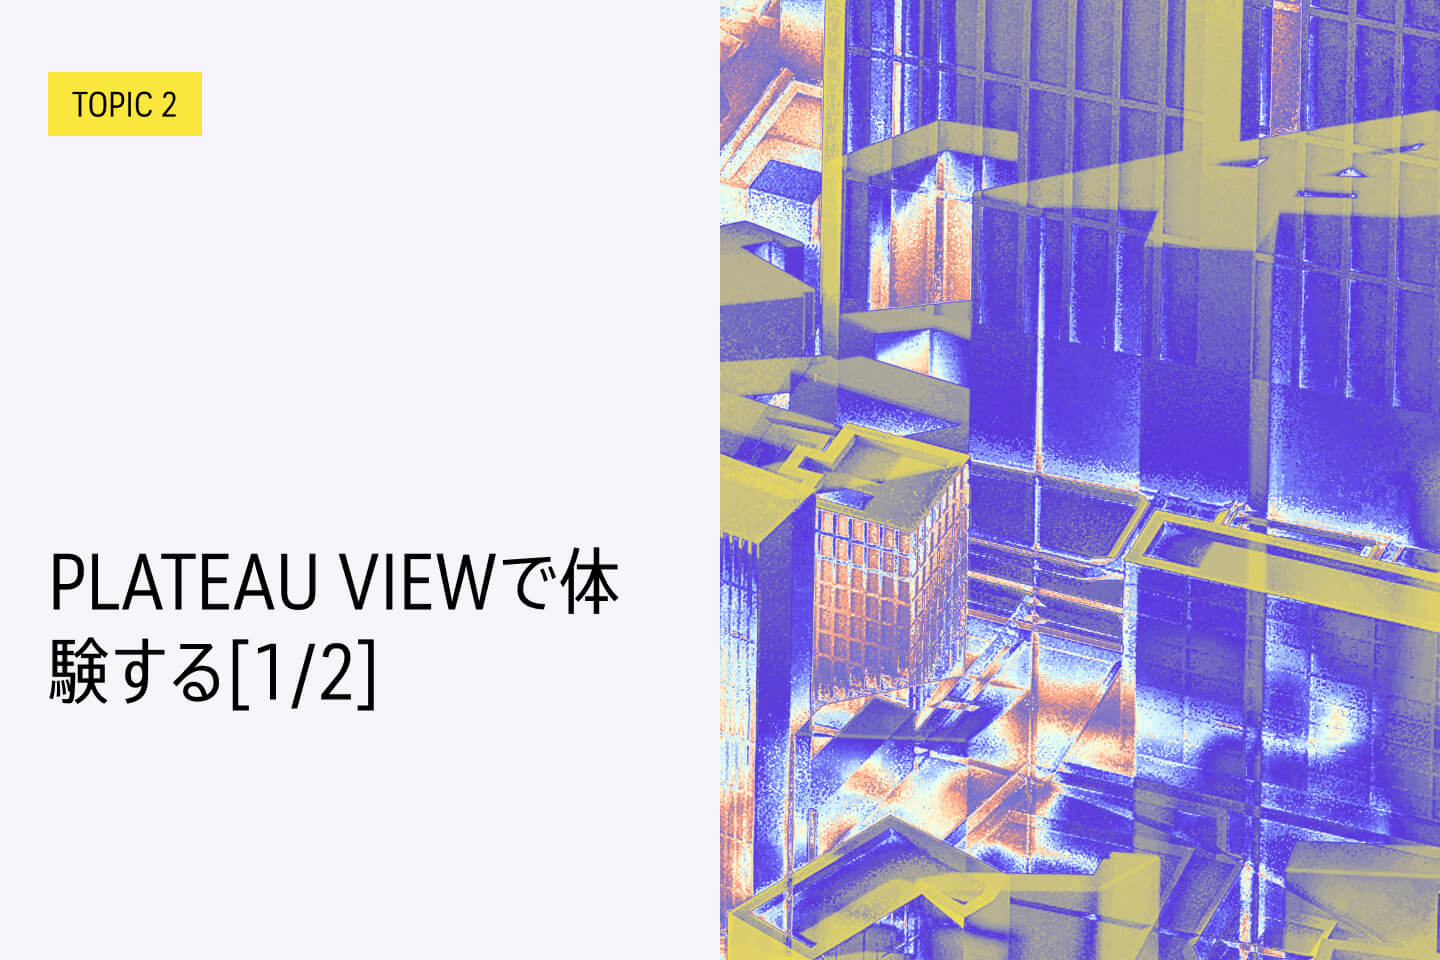 TOPIC 2｜PLATEAU VIEWで体験する[1/2]｜3D都市モデルをブラウザで利用